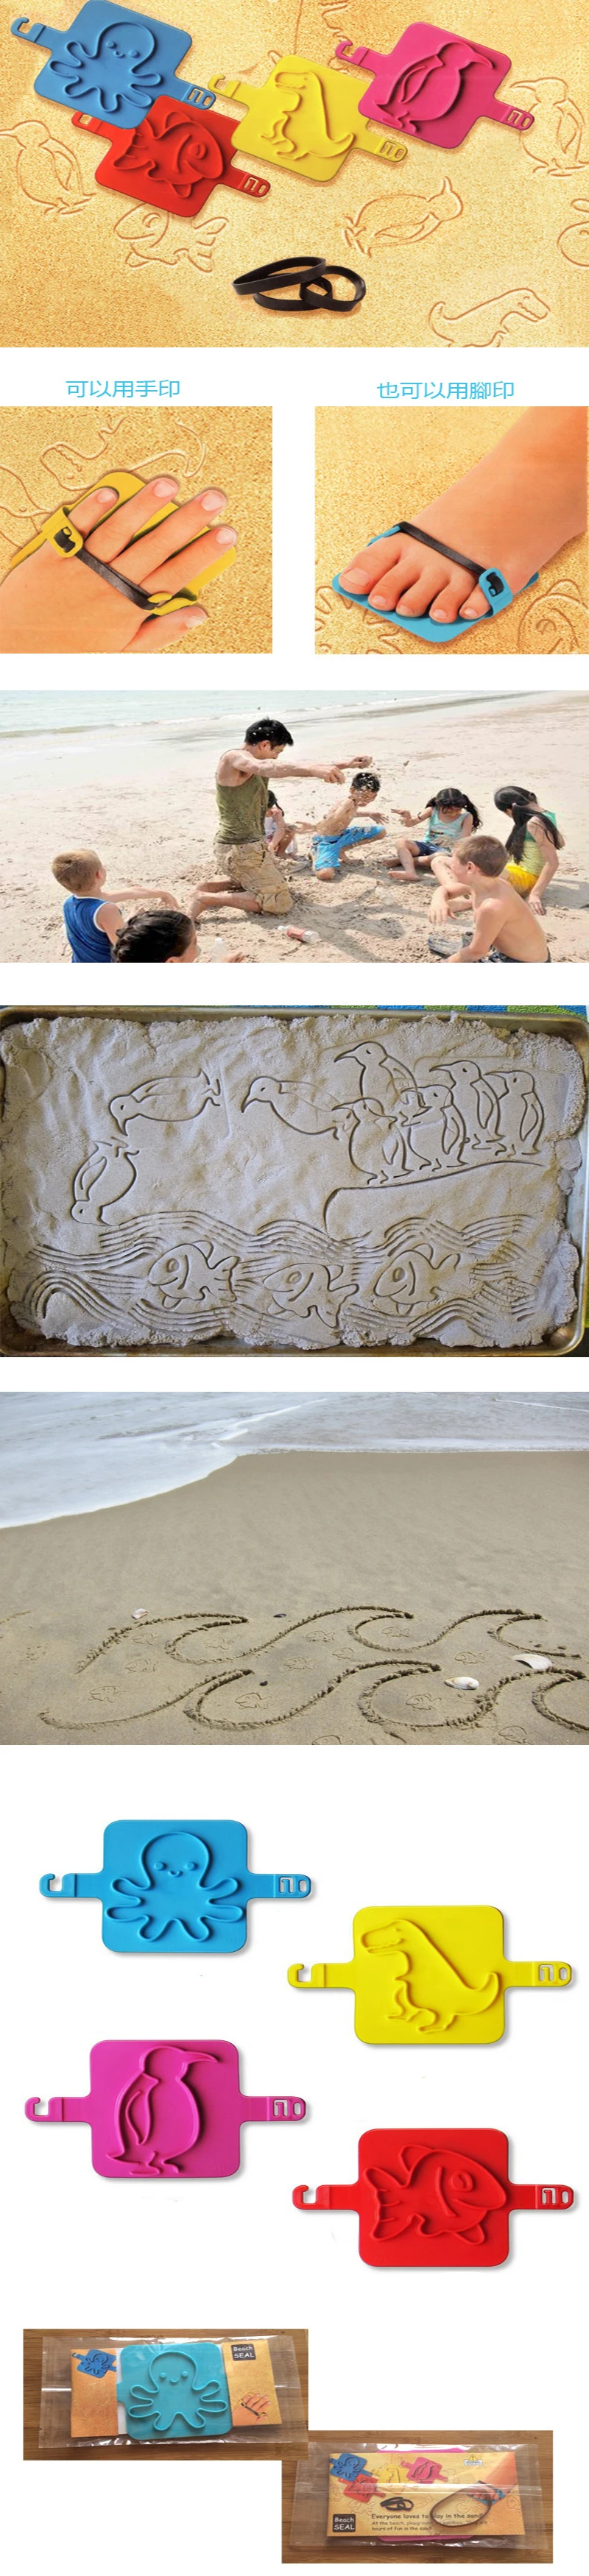 PIKAALAFAN милый детский Забавный пляжный штамп Мультяшные животные детский пляжный тюлень игрушка Сделай Сам Осьминог Пингвин рыбка штамп «динозавр» Детская игрушка